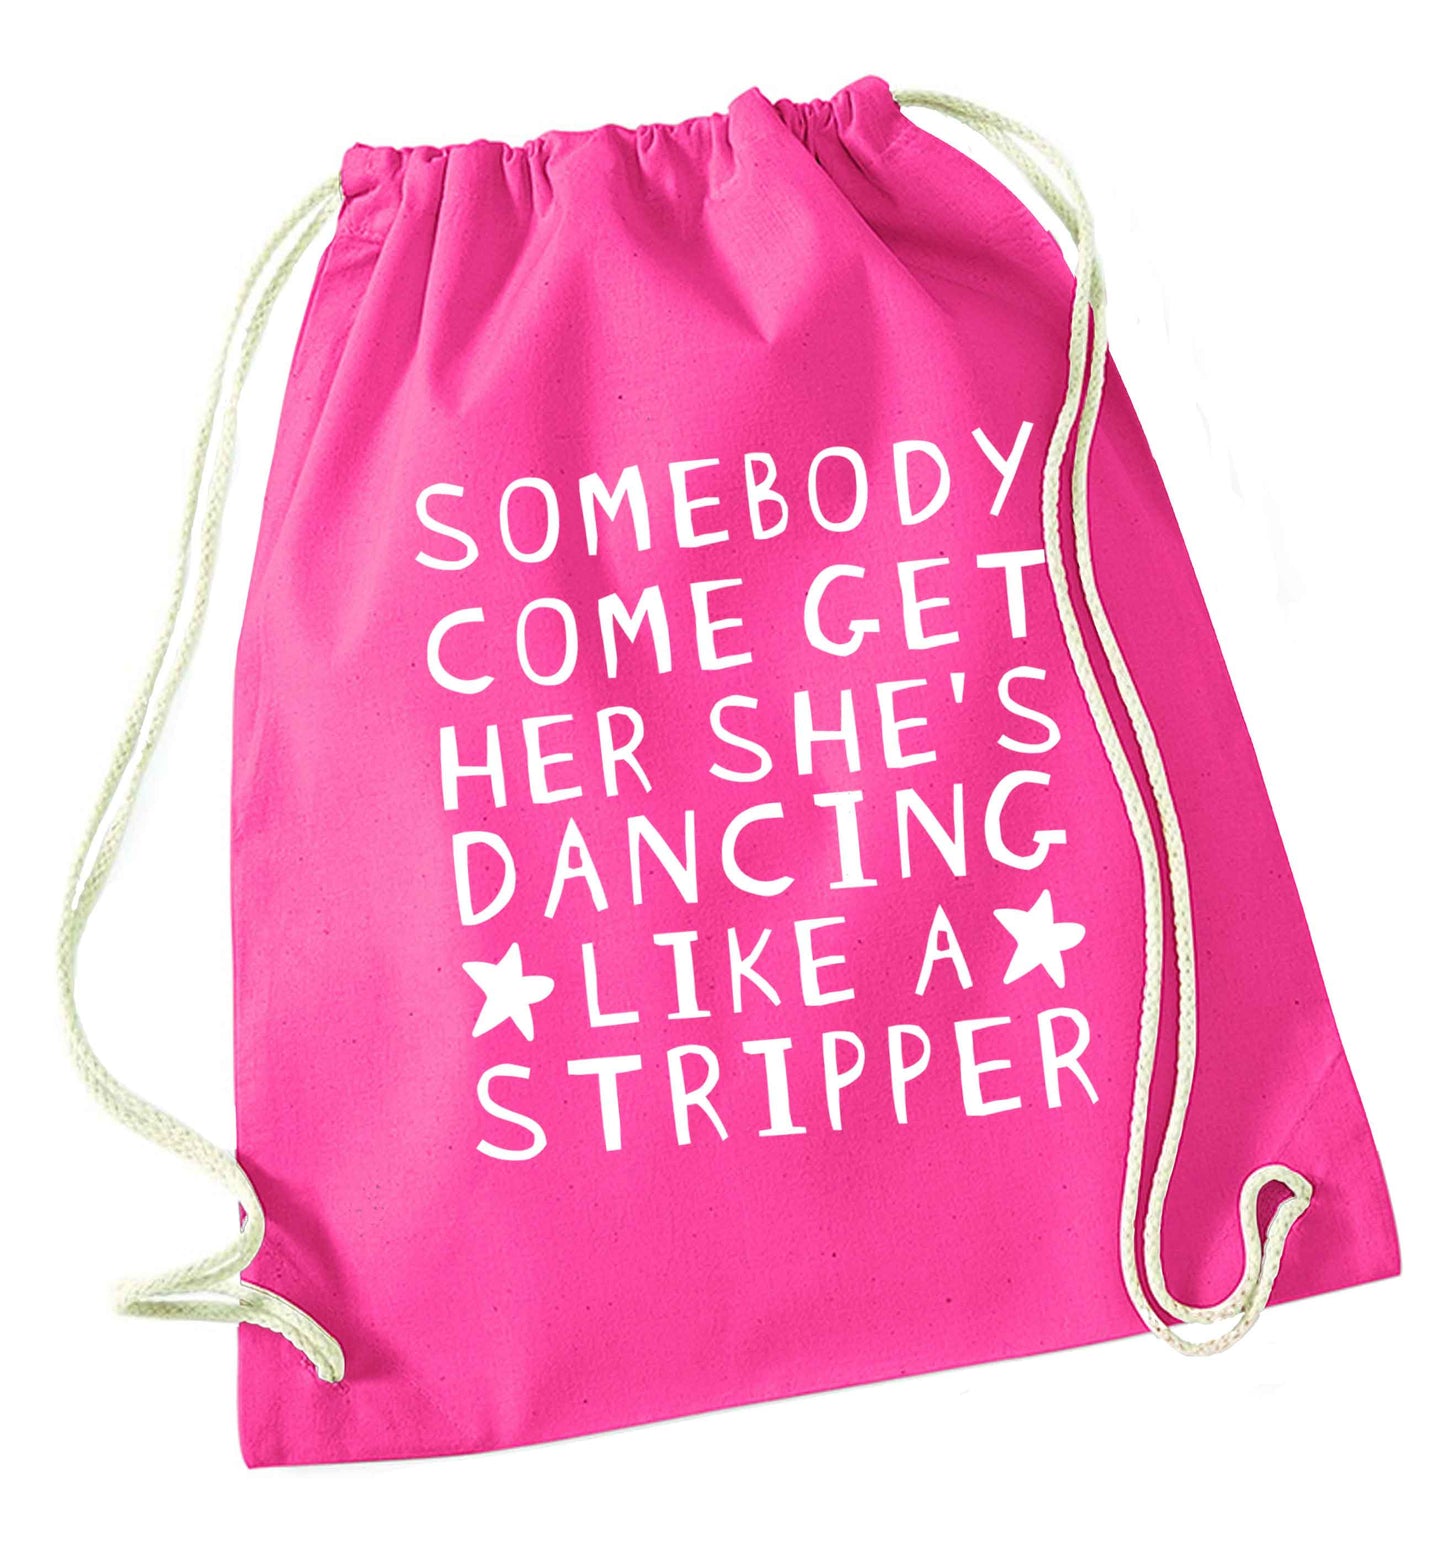 Gen Z funny viral meme  pink drawstring bag